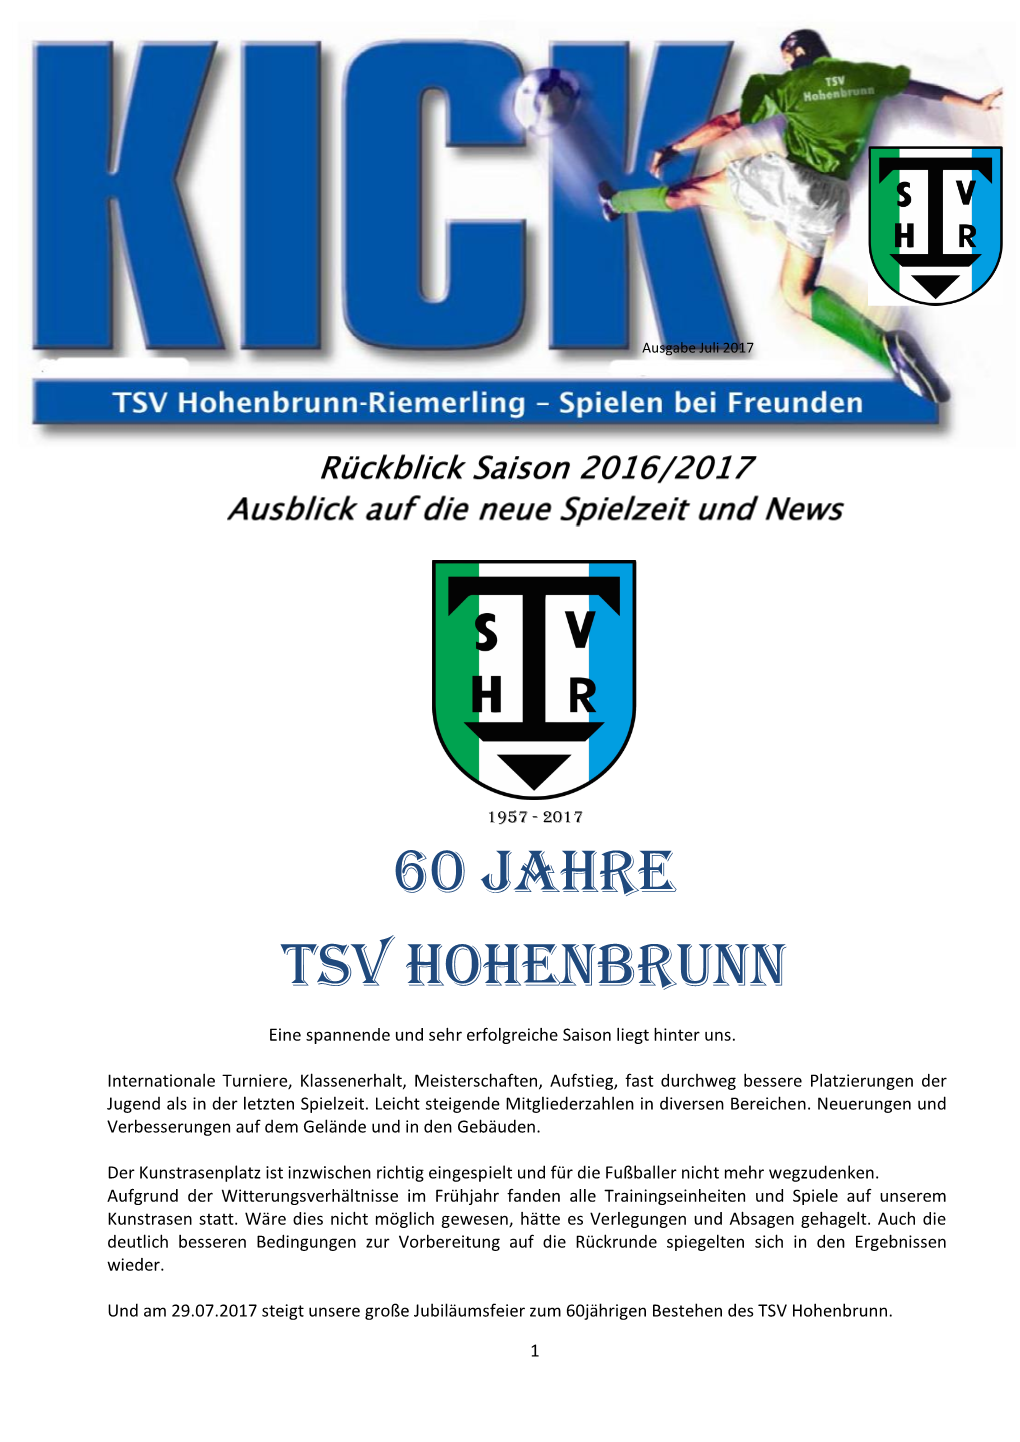 60 Jahre TSV Hohenbrunn